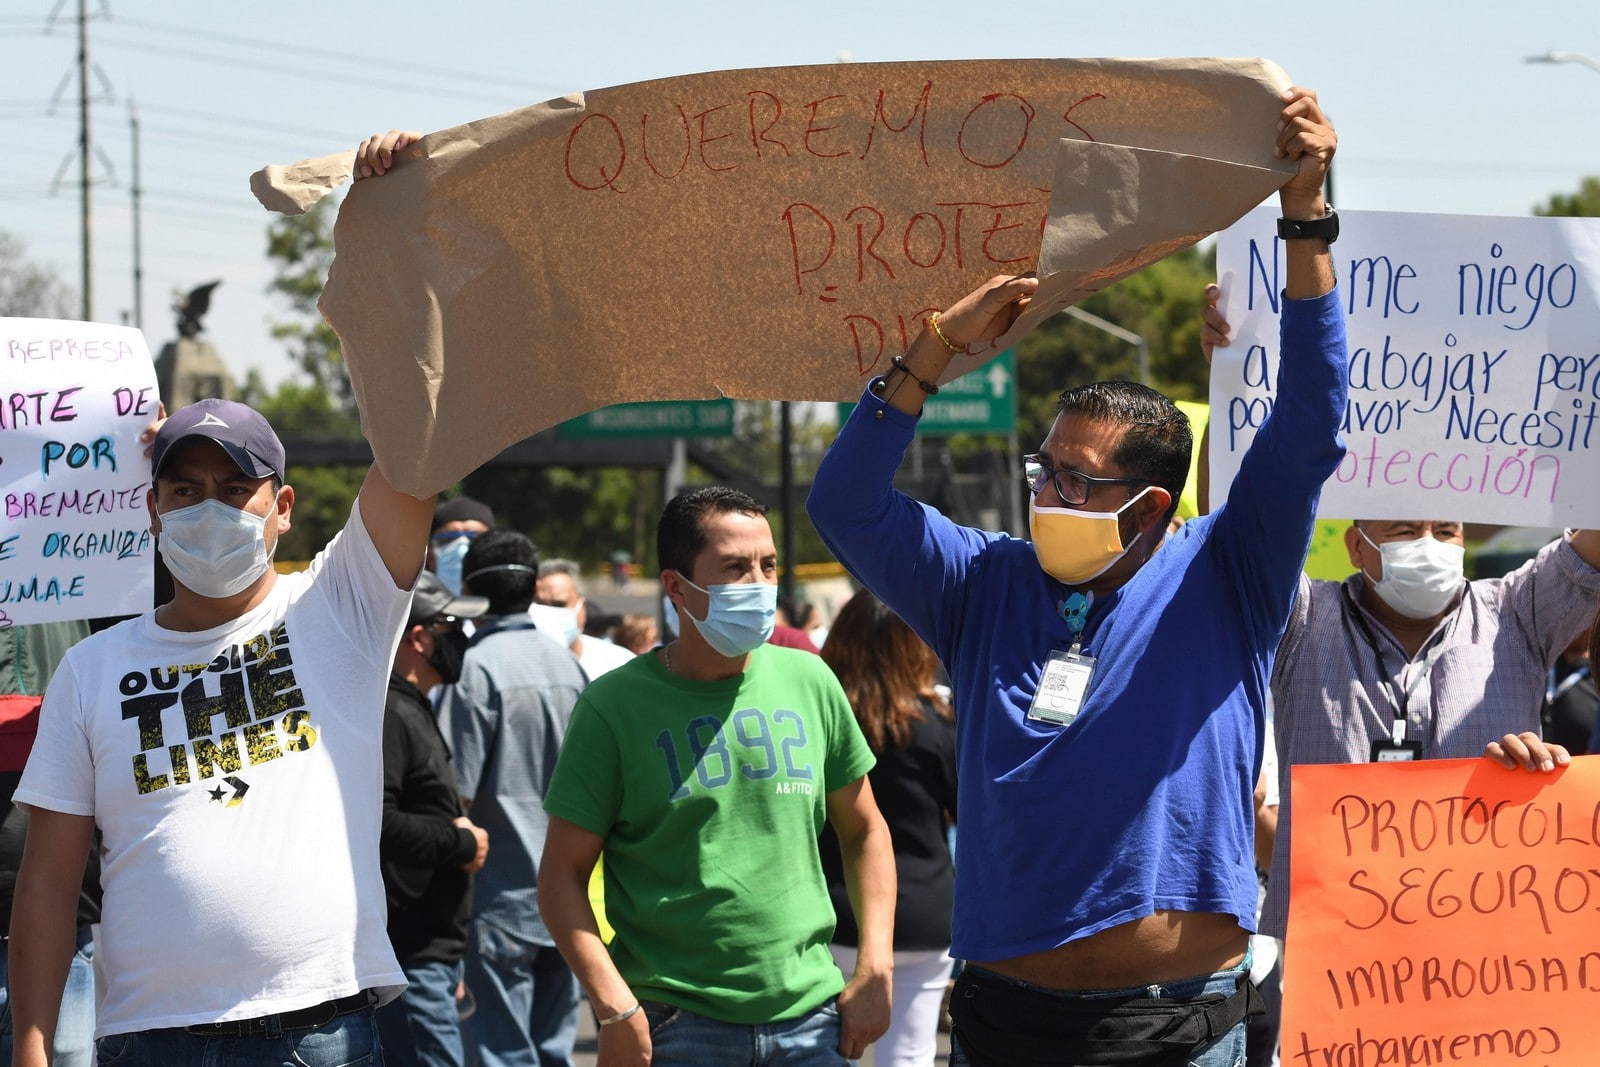 Manifestation devant l'hôpital spécialisé de La Raza à Mexico, le 27 avril 2020,
Auteurs  : Jorge Núñez/EFE/SIPA,
Numéro de reportage  : 00958592_000003.